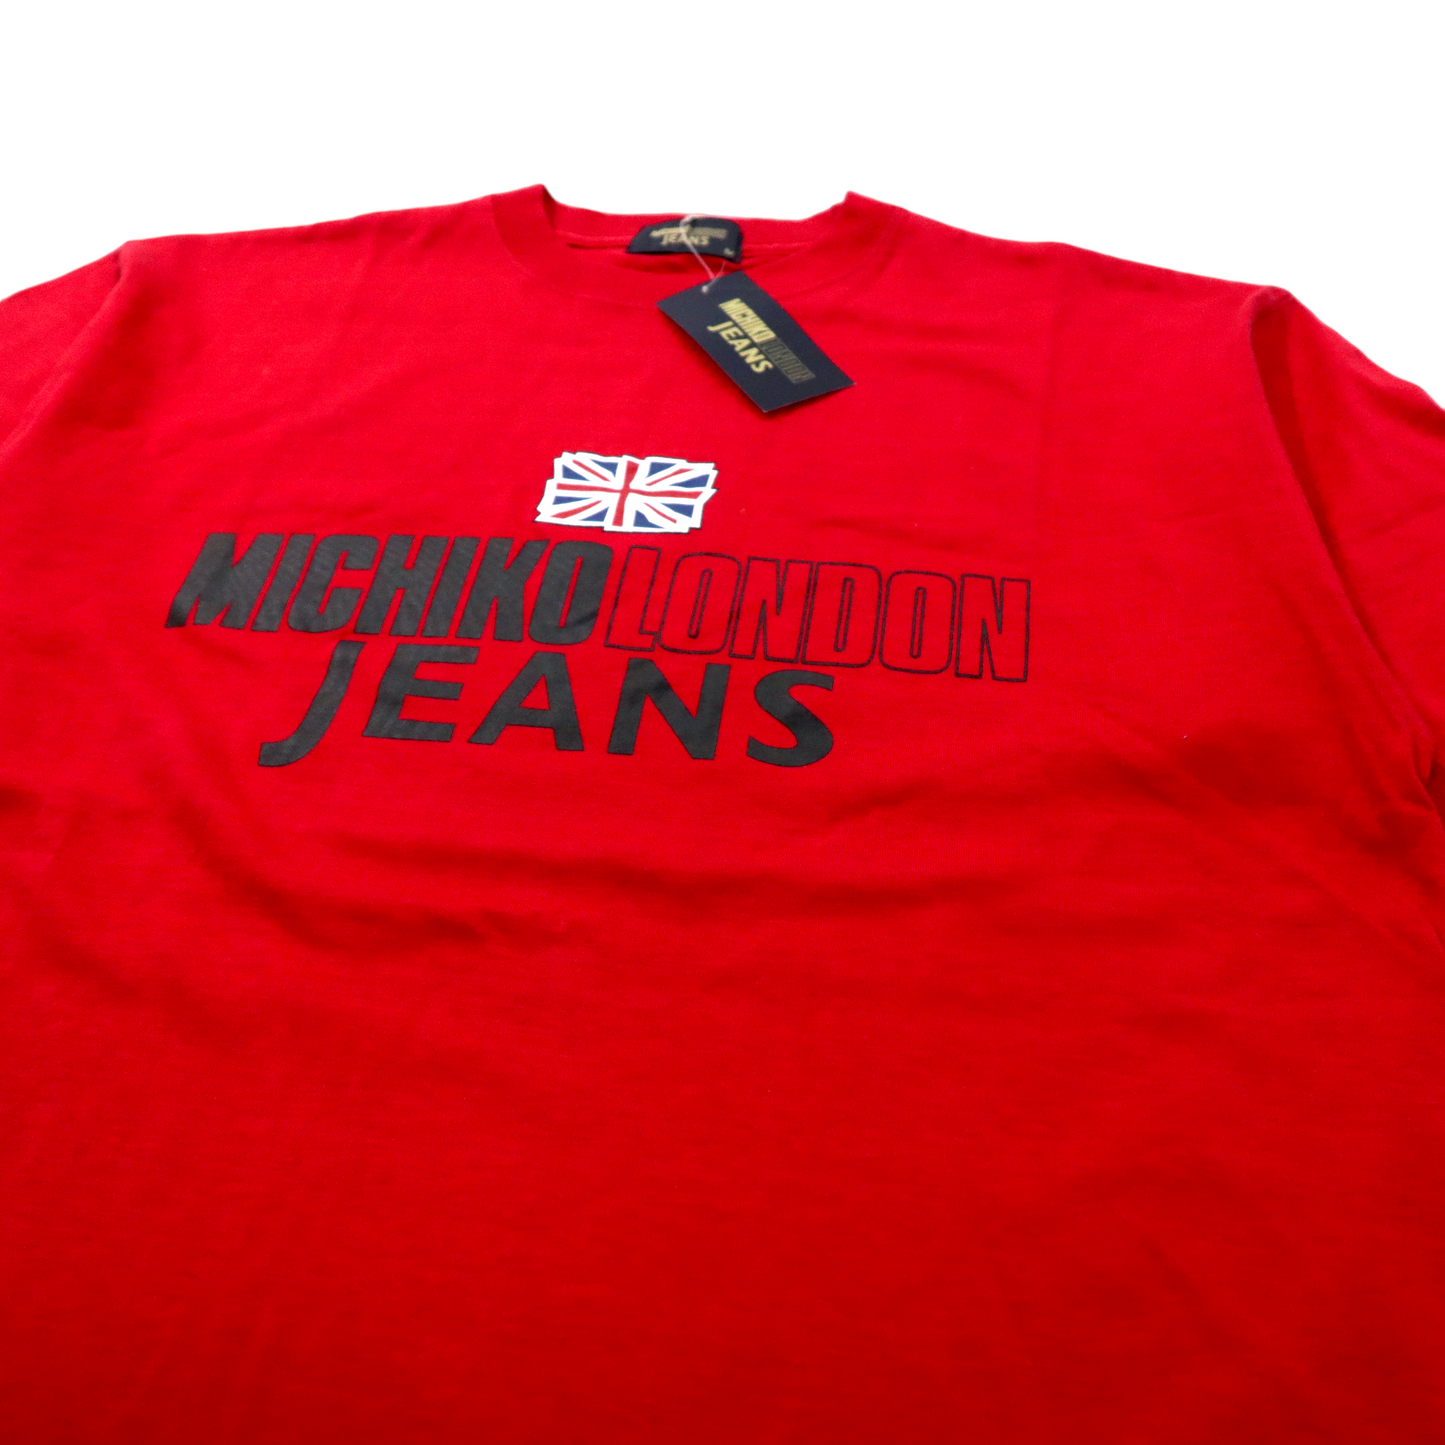 MICHIKO LONDON JEANS ビッグサイズ 90年代 ロゴプリントTシャツ M レッド コットン ユニオンジャック 未使用品